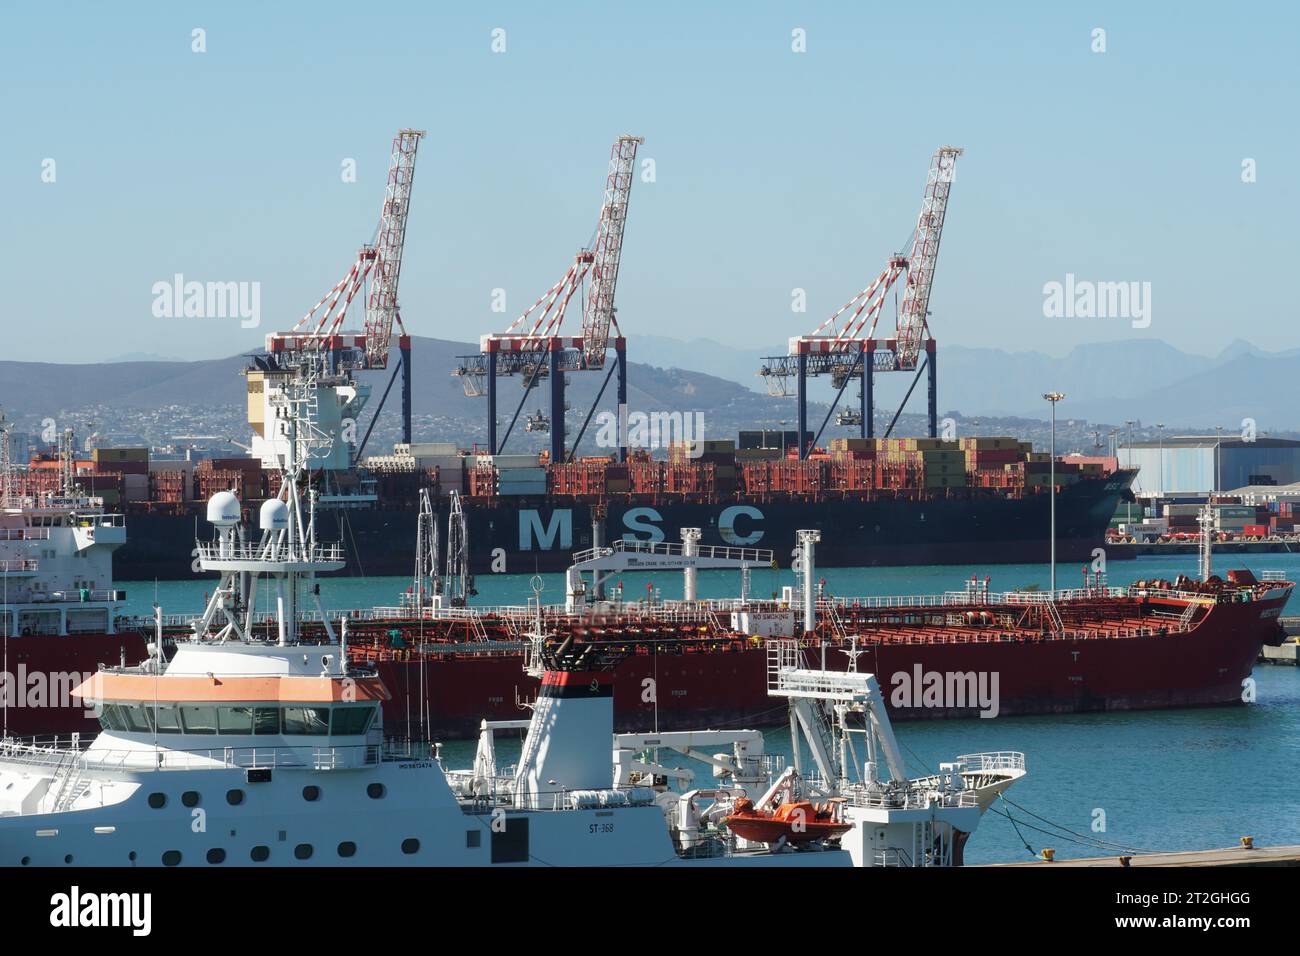 Containerschiff der Firma MSC, Orangentanker und weißes Wissenschaftsschiff im Hafen von Kapstadt. Stockfoto